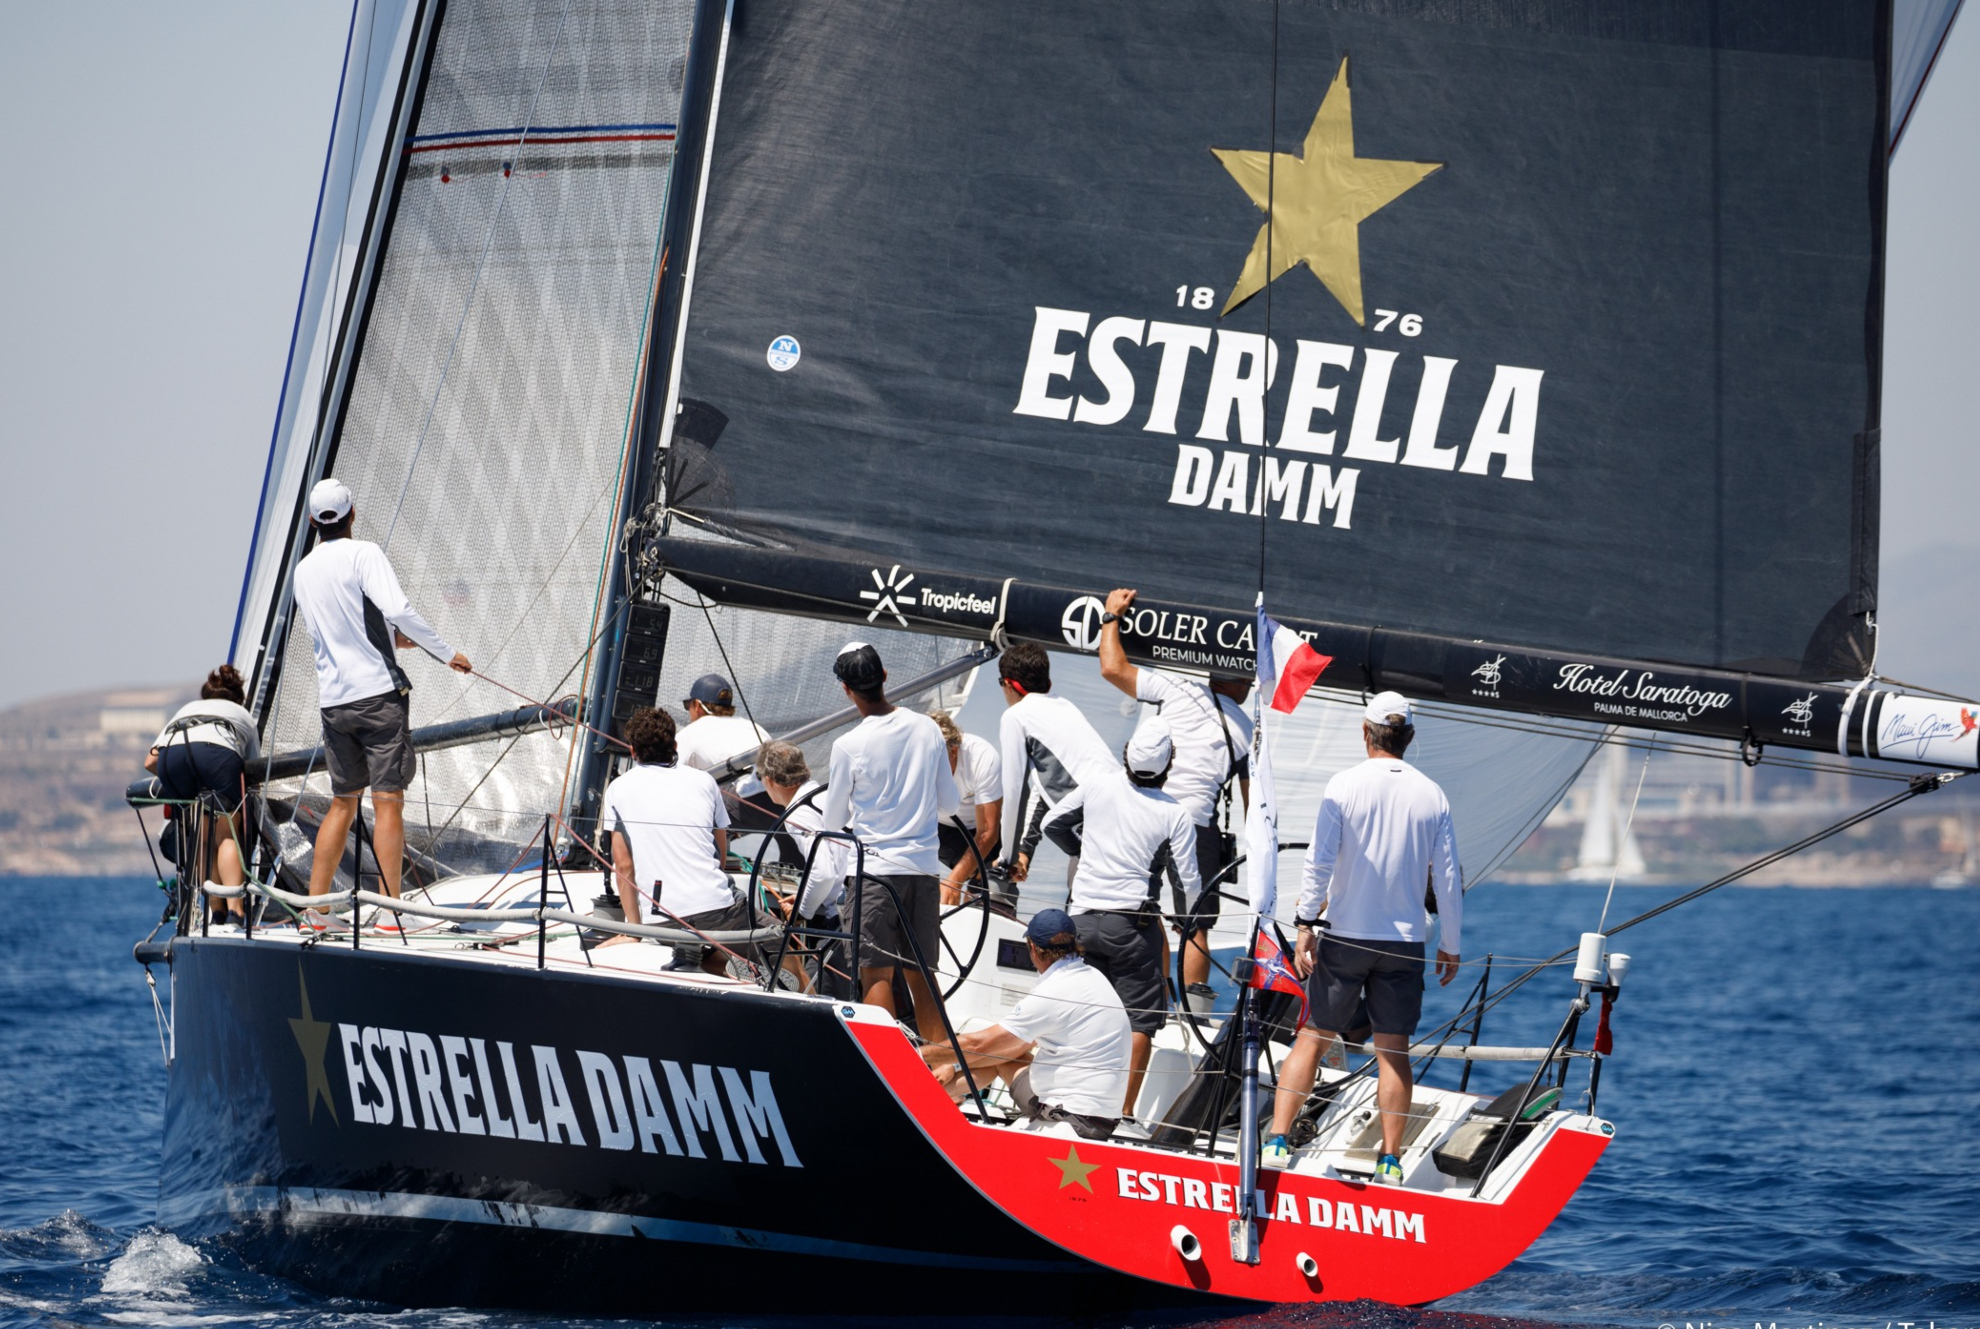 El Estrella Damm debutó esta temporada en el Tabarca Vela en Alicante / NICO MARTÍNEZ